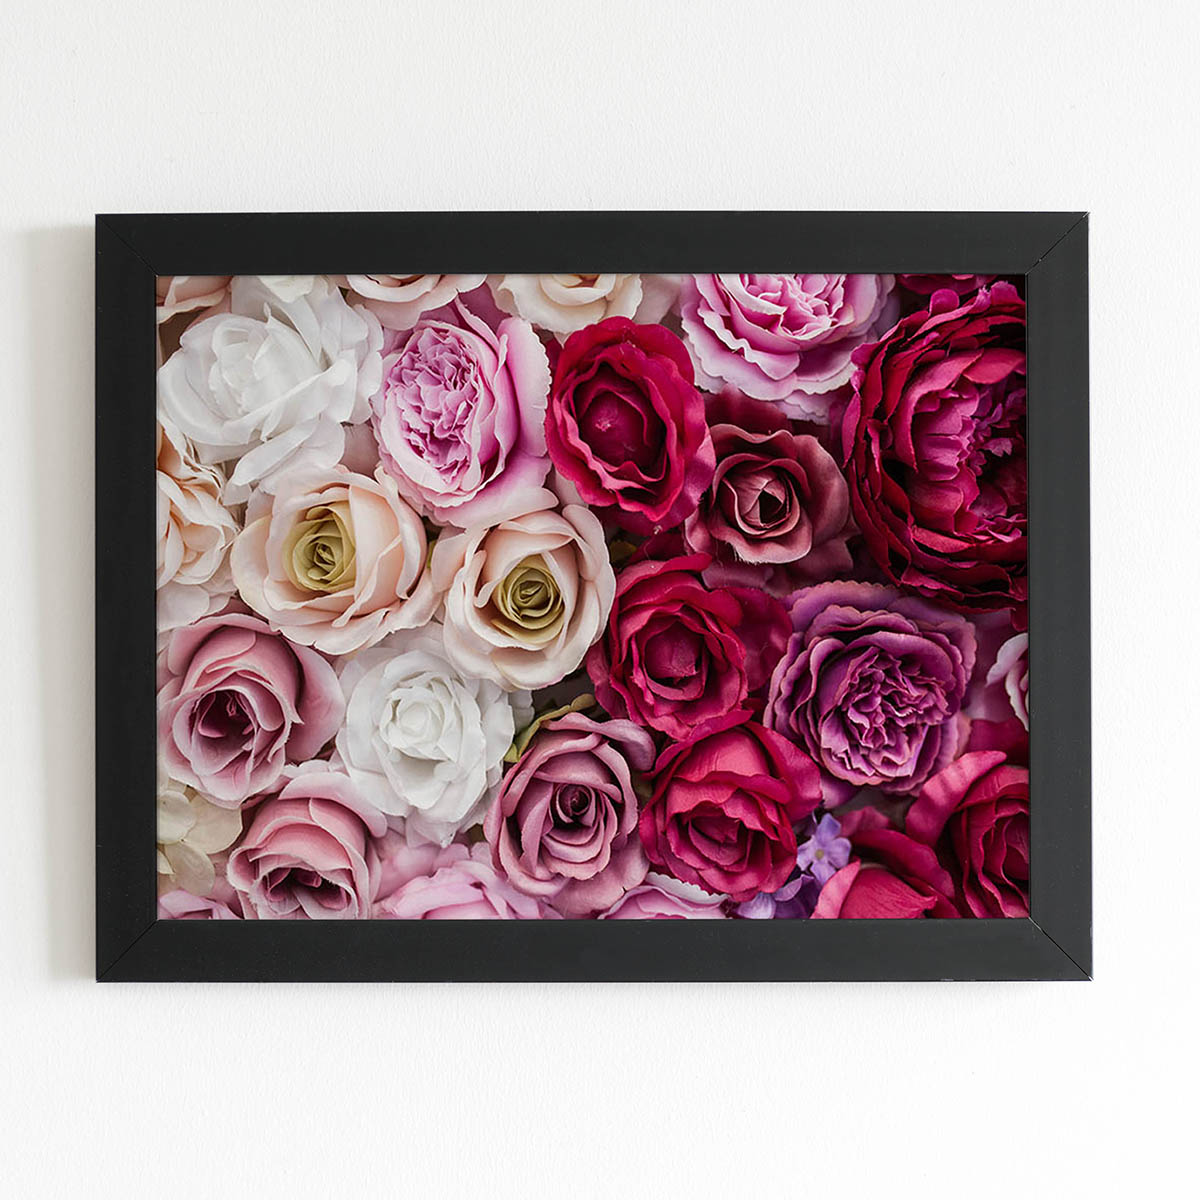 Quadro Rosas Coloridas Degradê Flores Moldura Preta 60x40cm